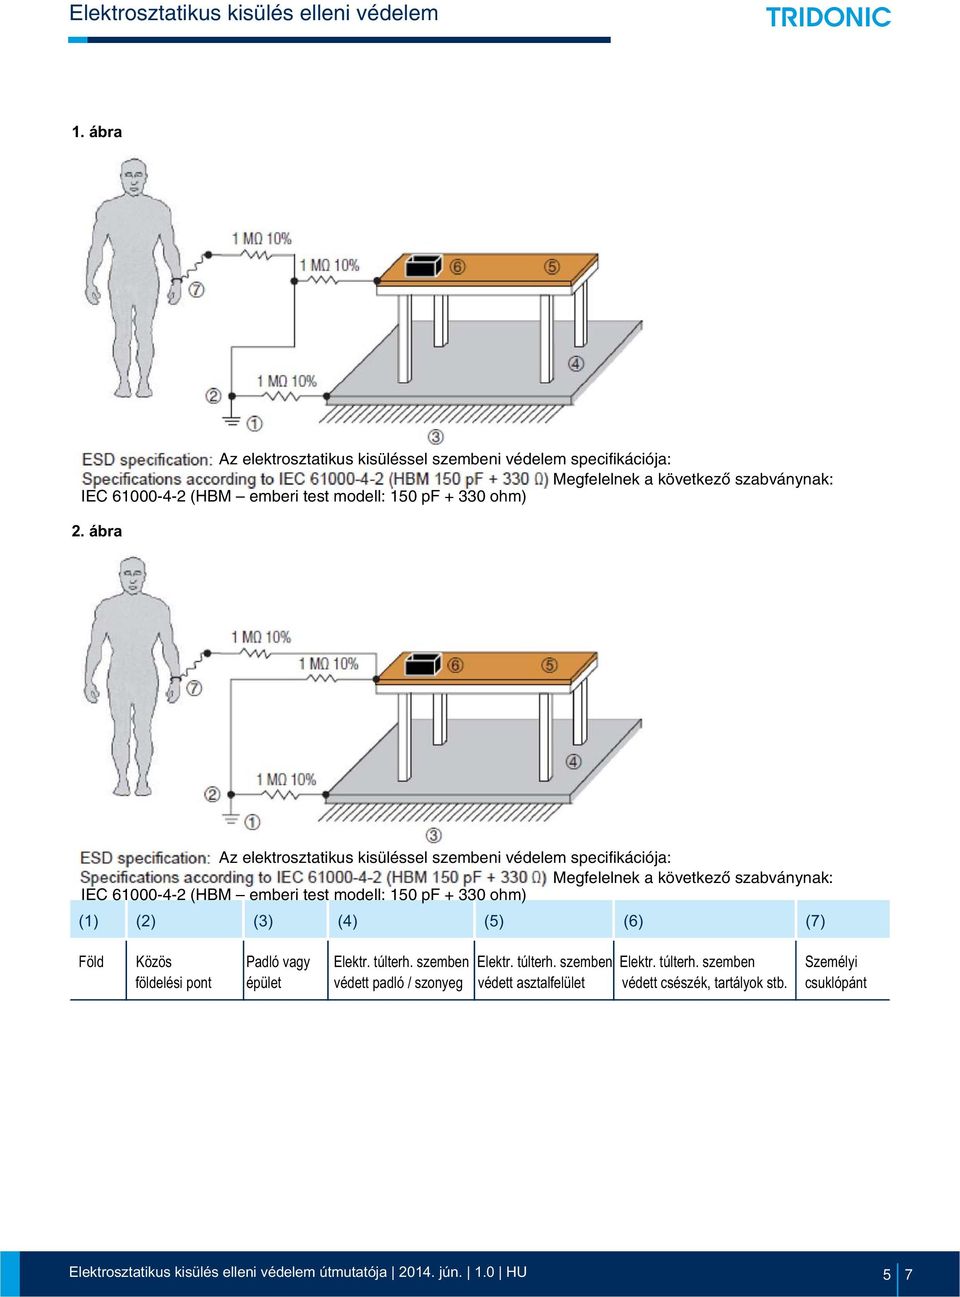 ábra Az elektrosztatikus kisüléssel szembeni védelem speifikáiója: Megfelelnek a következõ szabványnak: IEC 61000-4-2 (HBM emberi test modell: 150 pf +